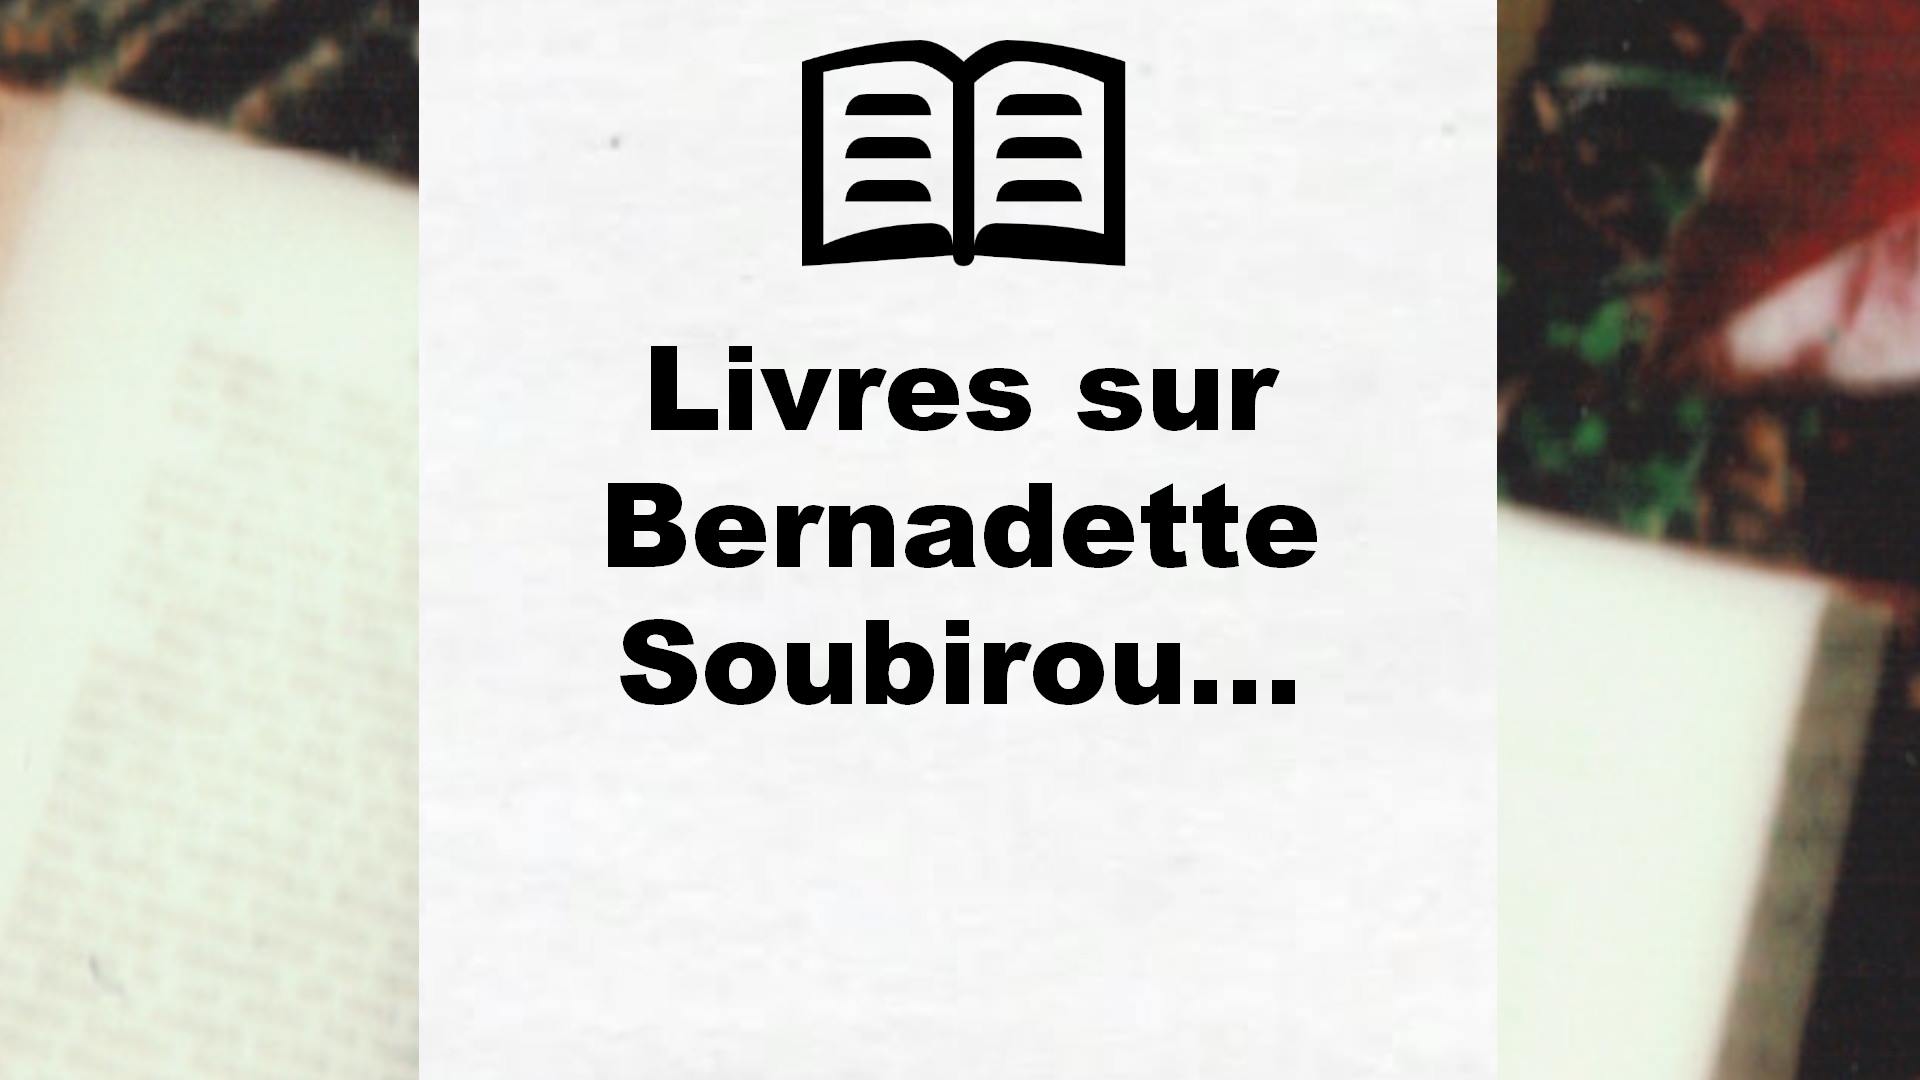 Livres sur Bernadette Soubirous